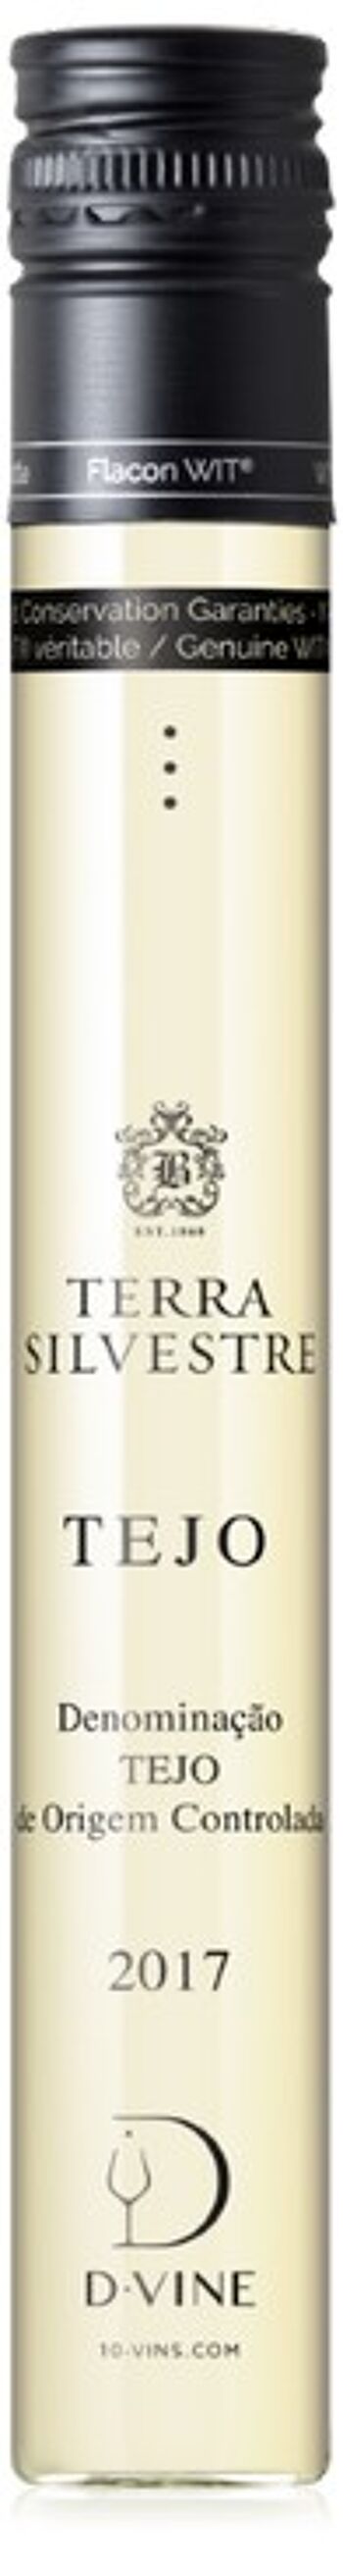 Vin Blanc - Portugal - Tejo Terra Silvestre 2018